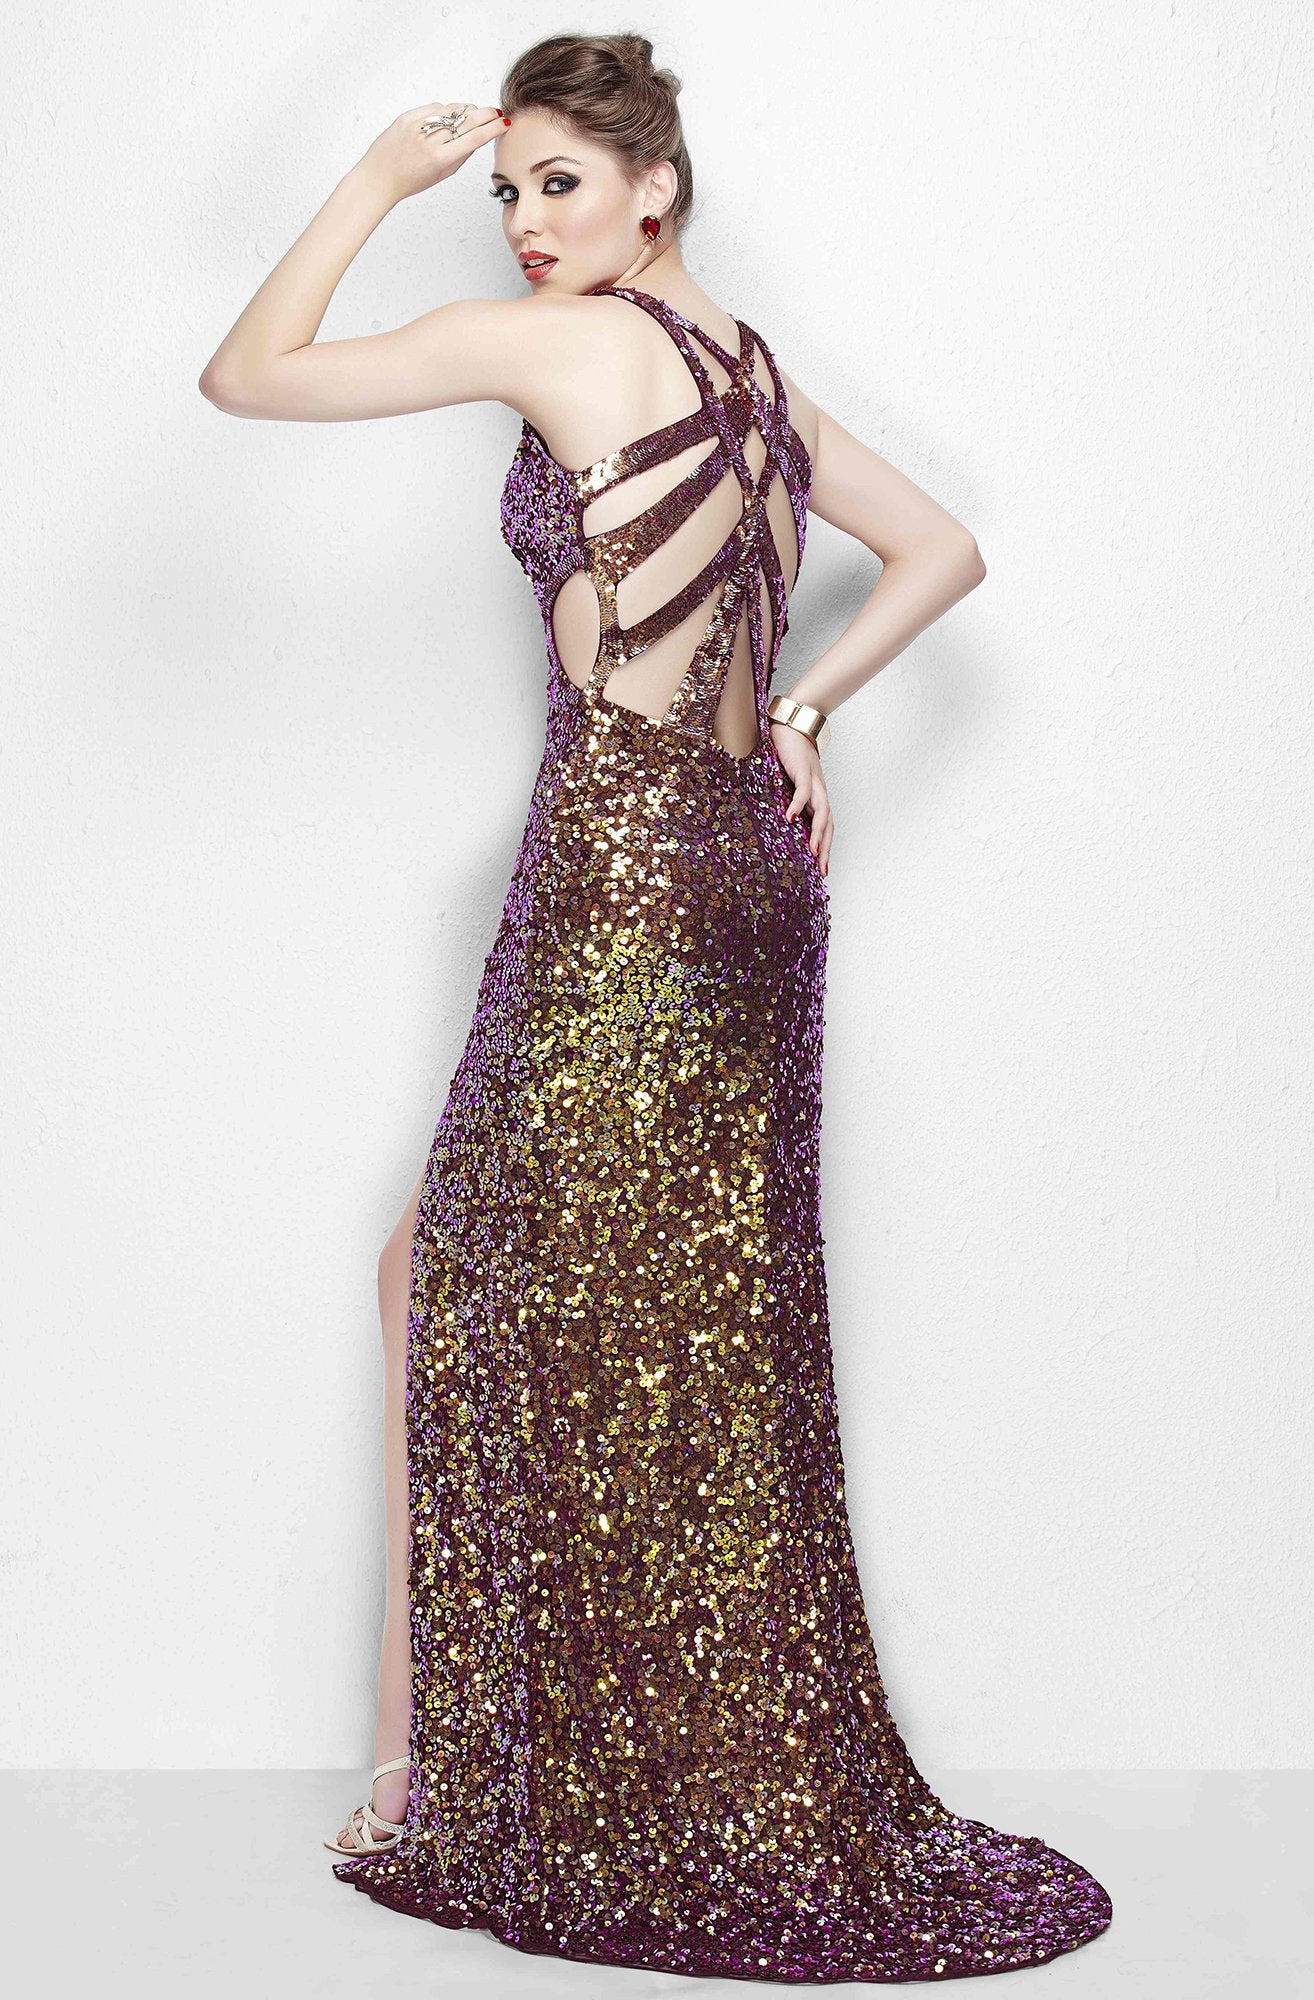 Primavera Couture - Vibrant sequined spaghetti strapped gown 9877 in Purple